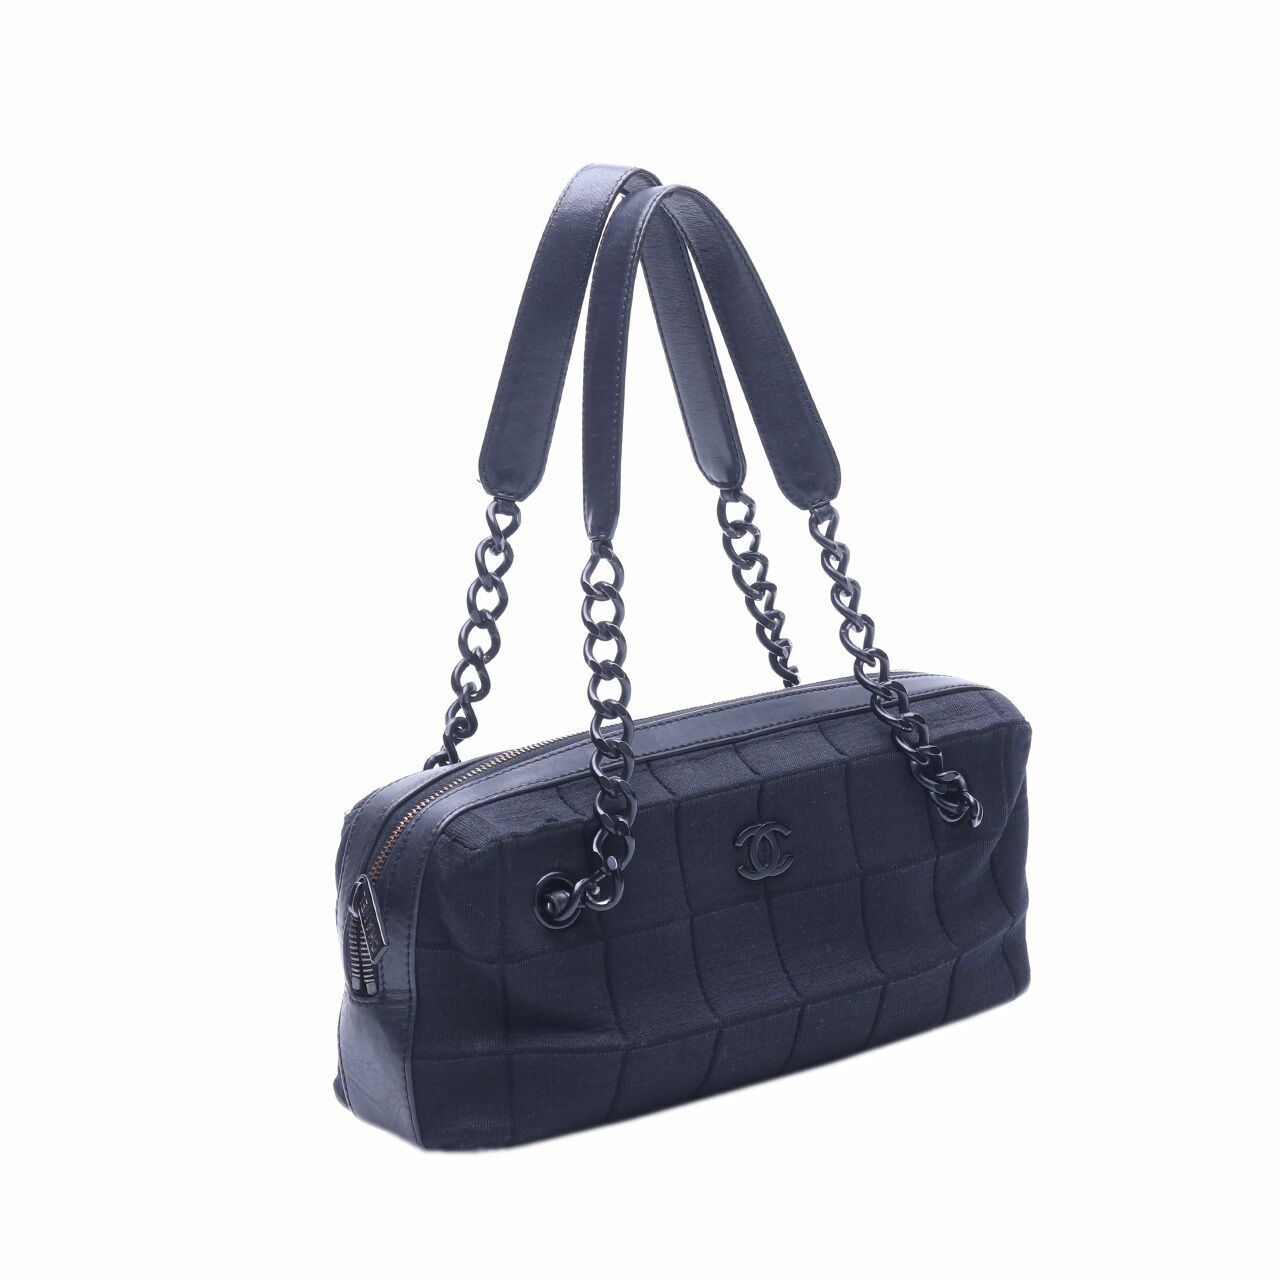 Chanel Black Shoulder Bag